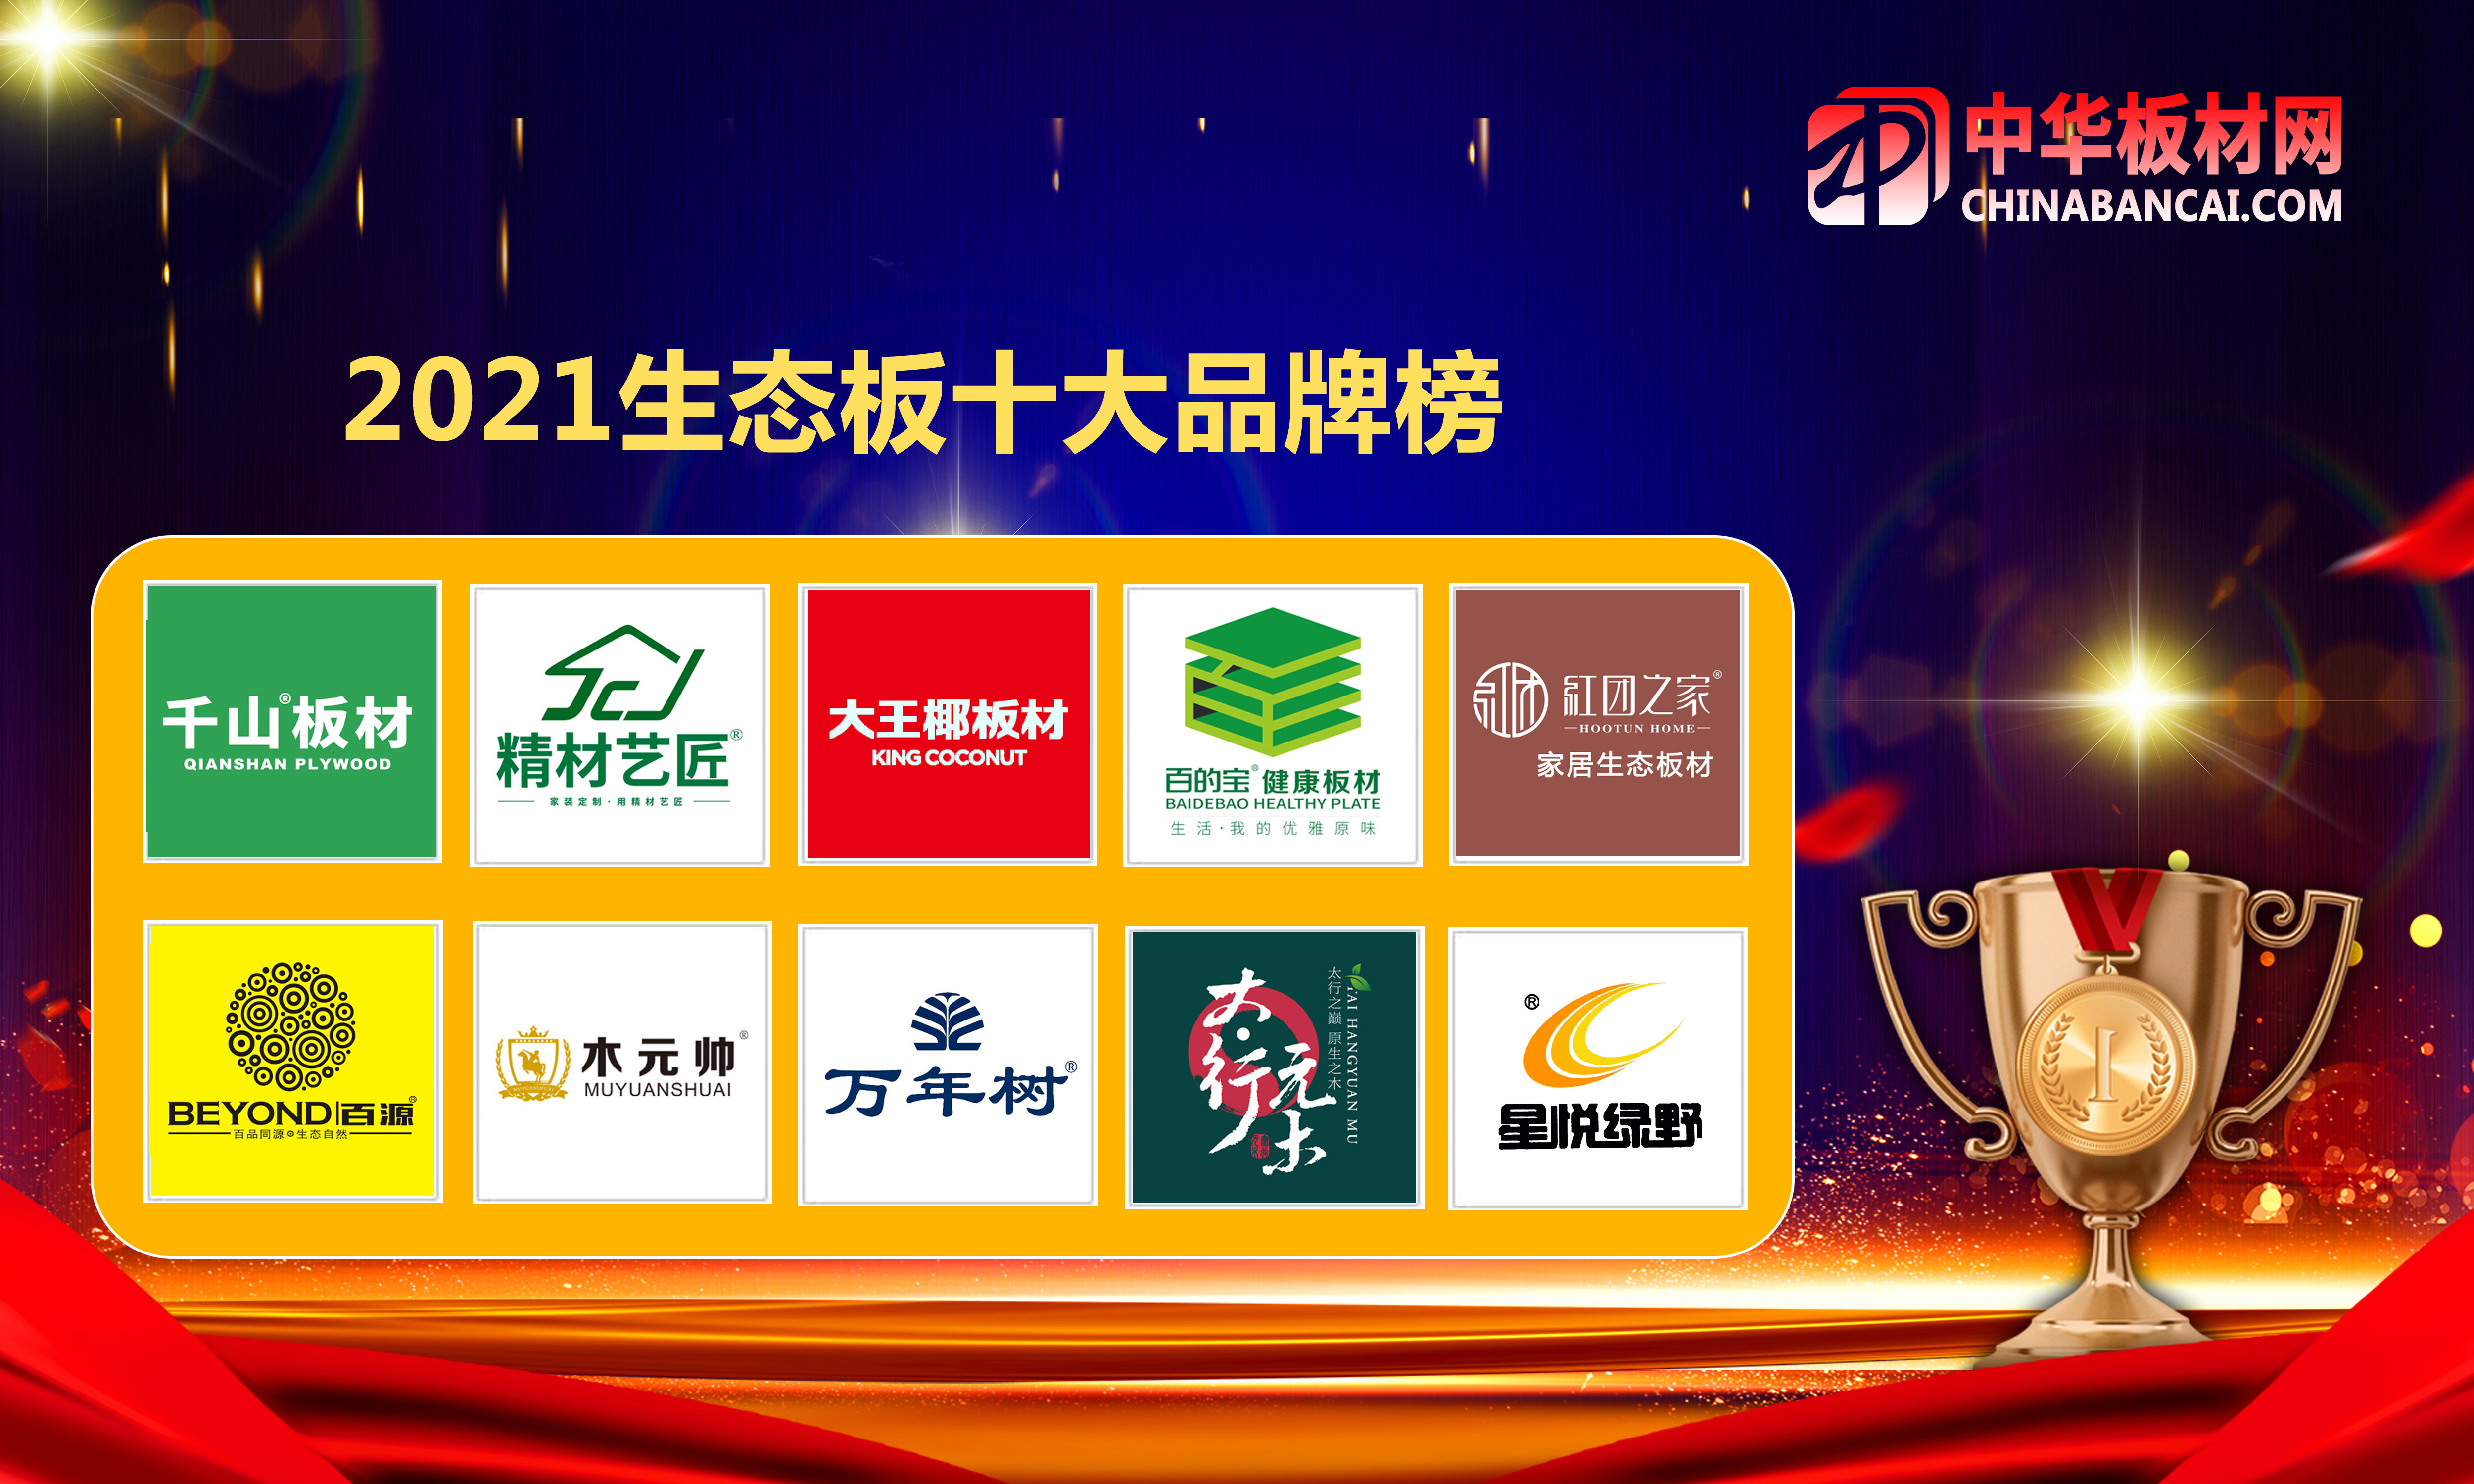 生态板十大品牌2021中国十大环保板材品牌排行榜名单1,露水河(吉林